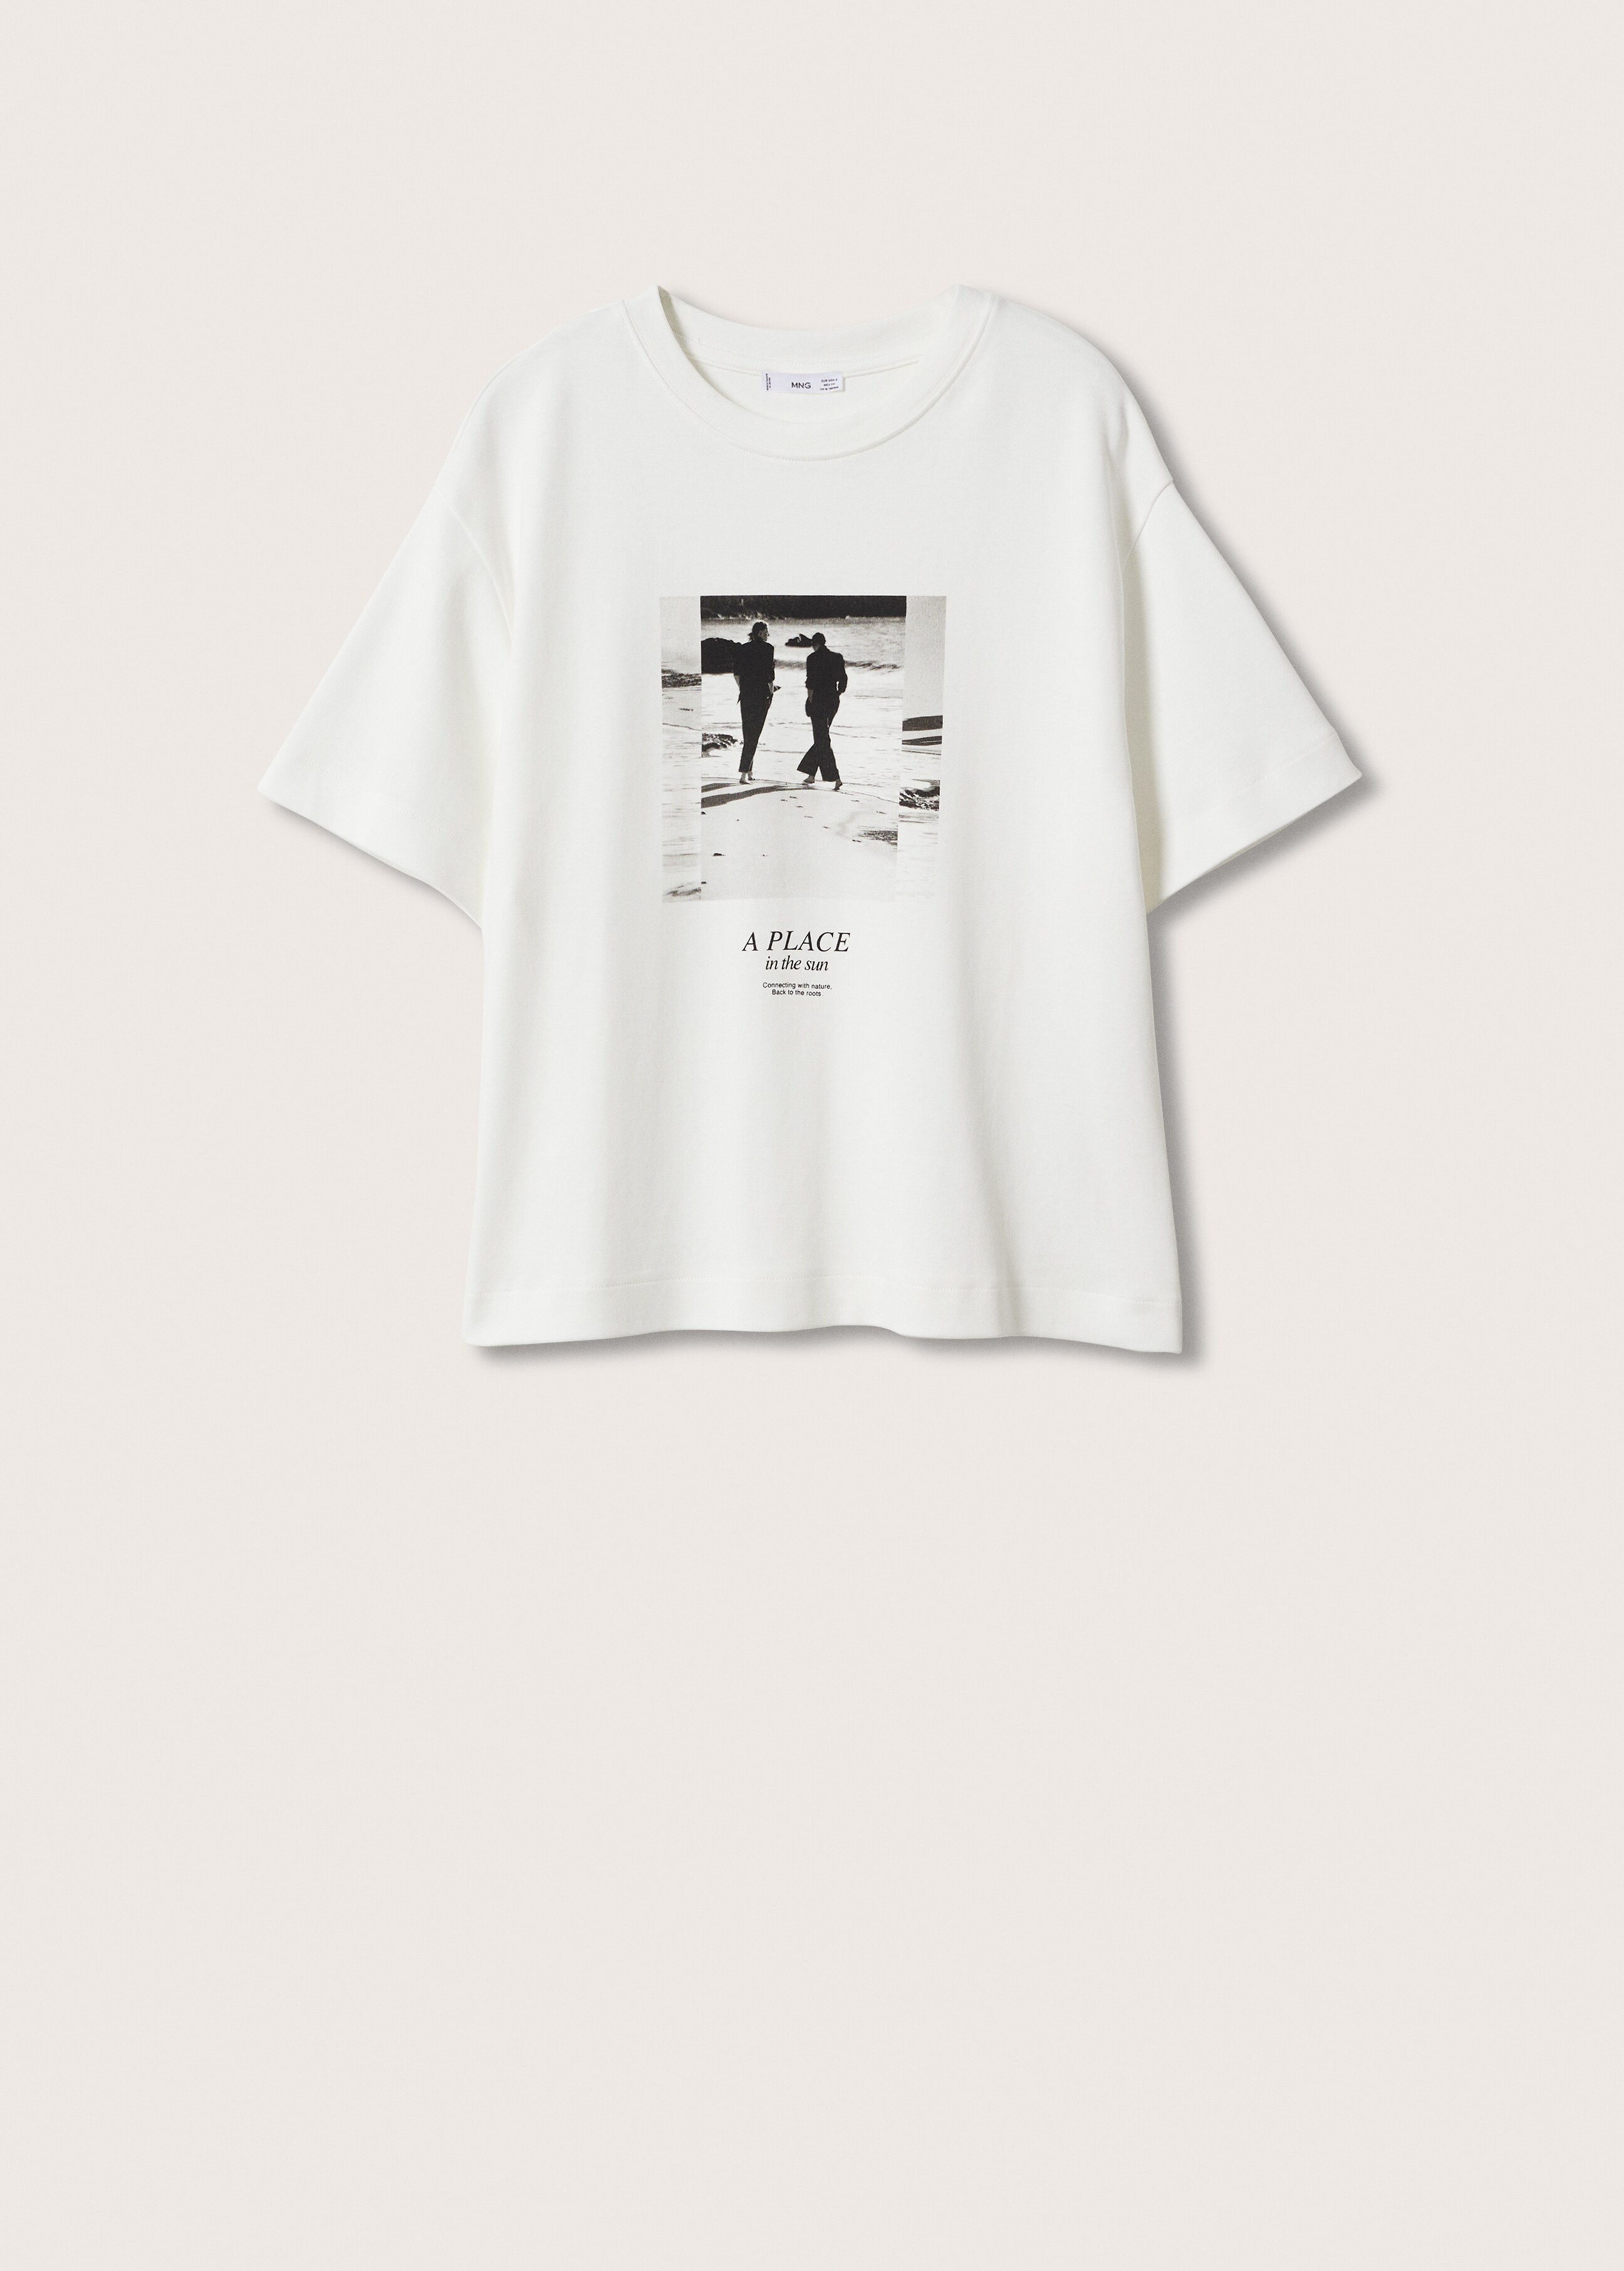 Camiseta algodón estampada - Artículo sin modelo